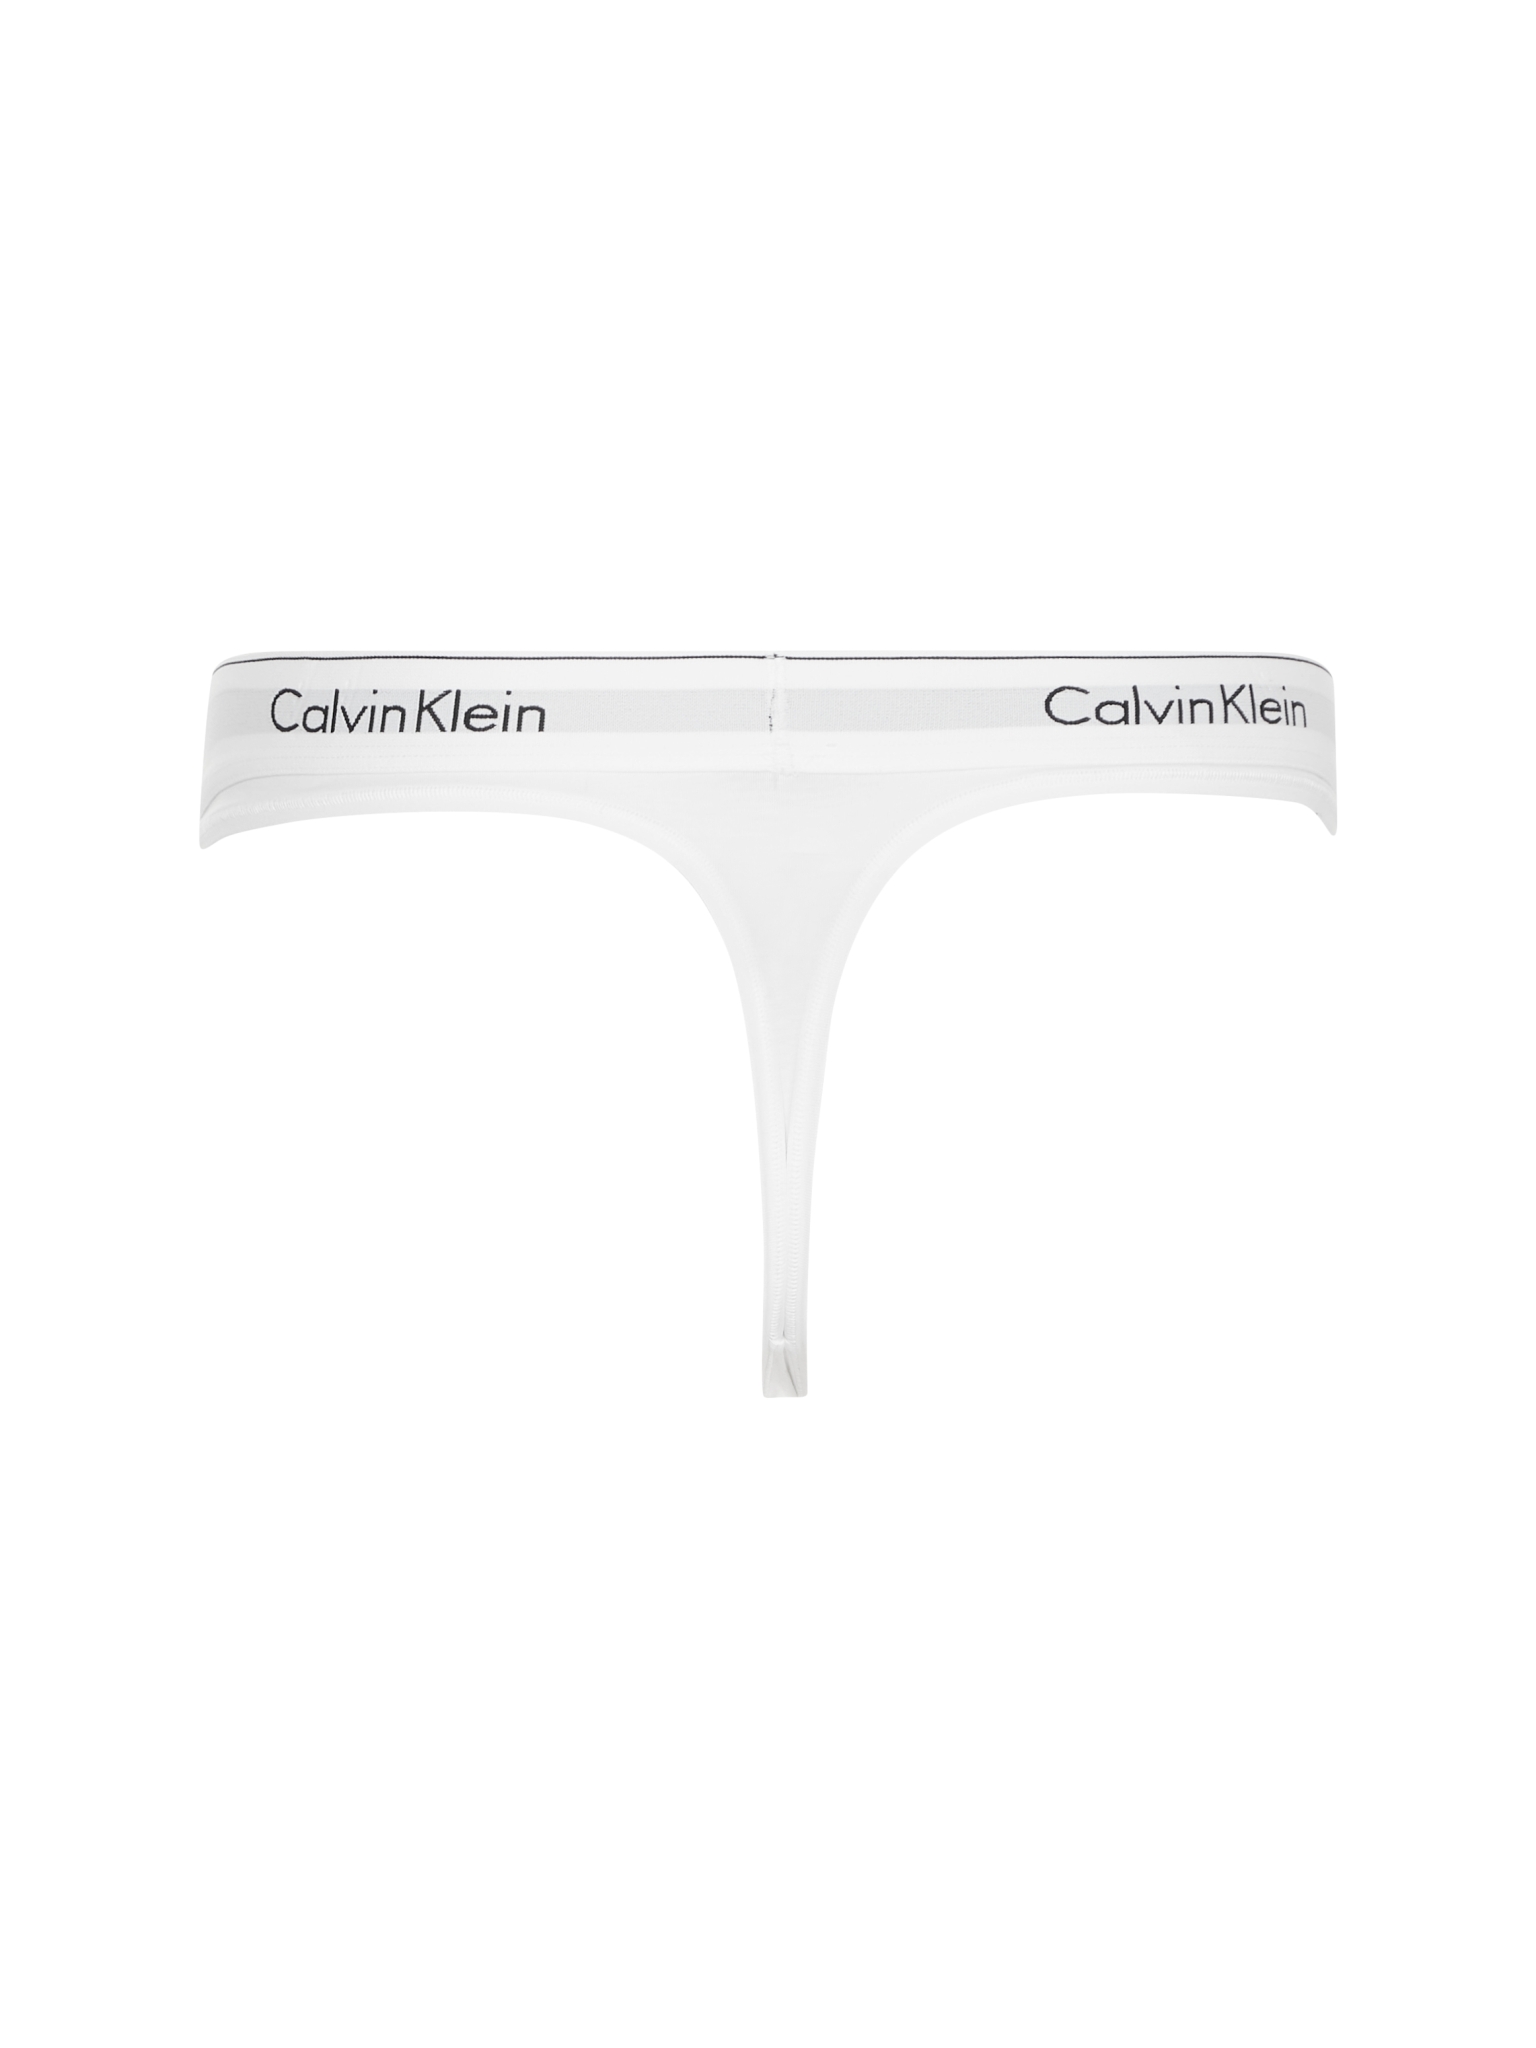 CALVIN KLEIN MODERN COTTON STRING 10497207 kaufen | WÖHRL